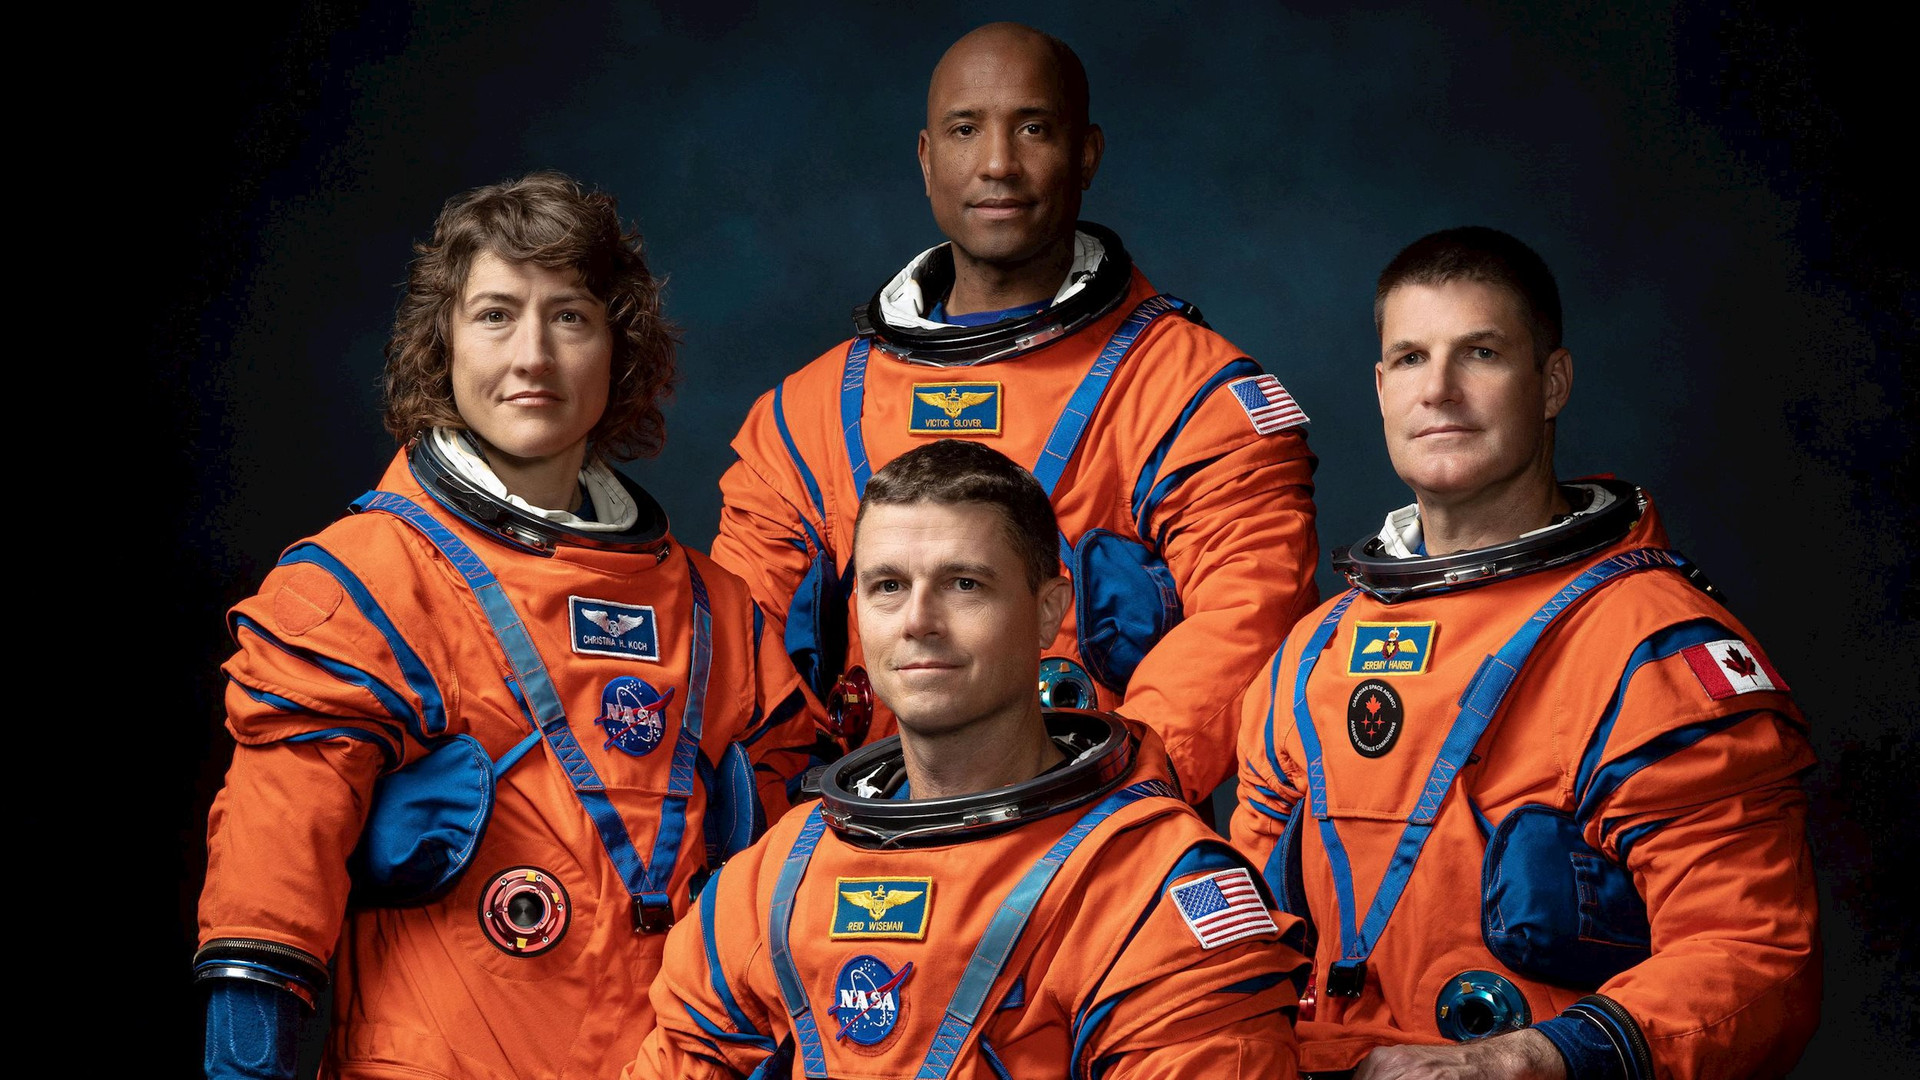 Sau nửa thế kỷ đình trệ, NASA vừa tuyển được 4 người để đưa trở lại mặt trăng - Ảnh 1.